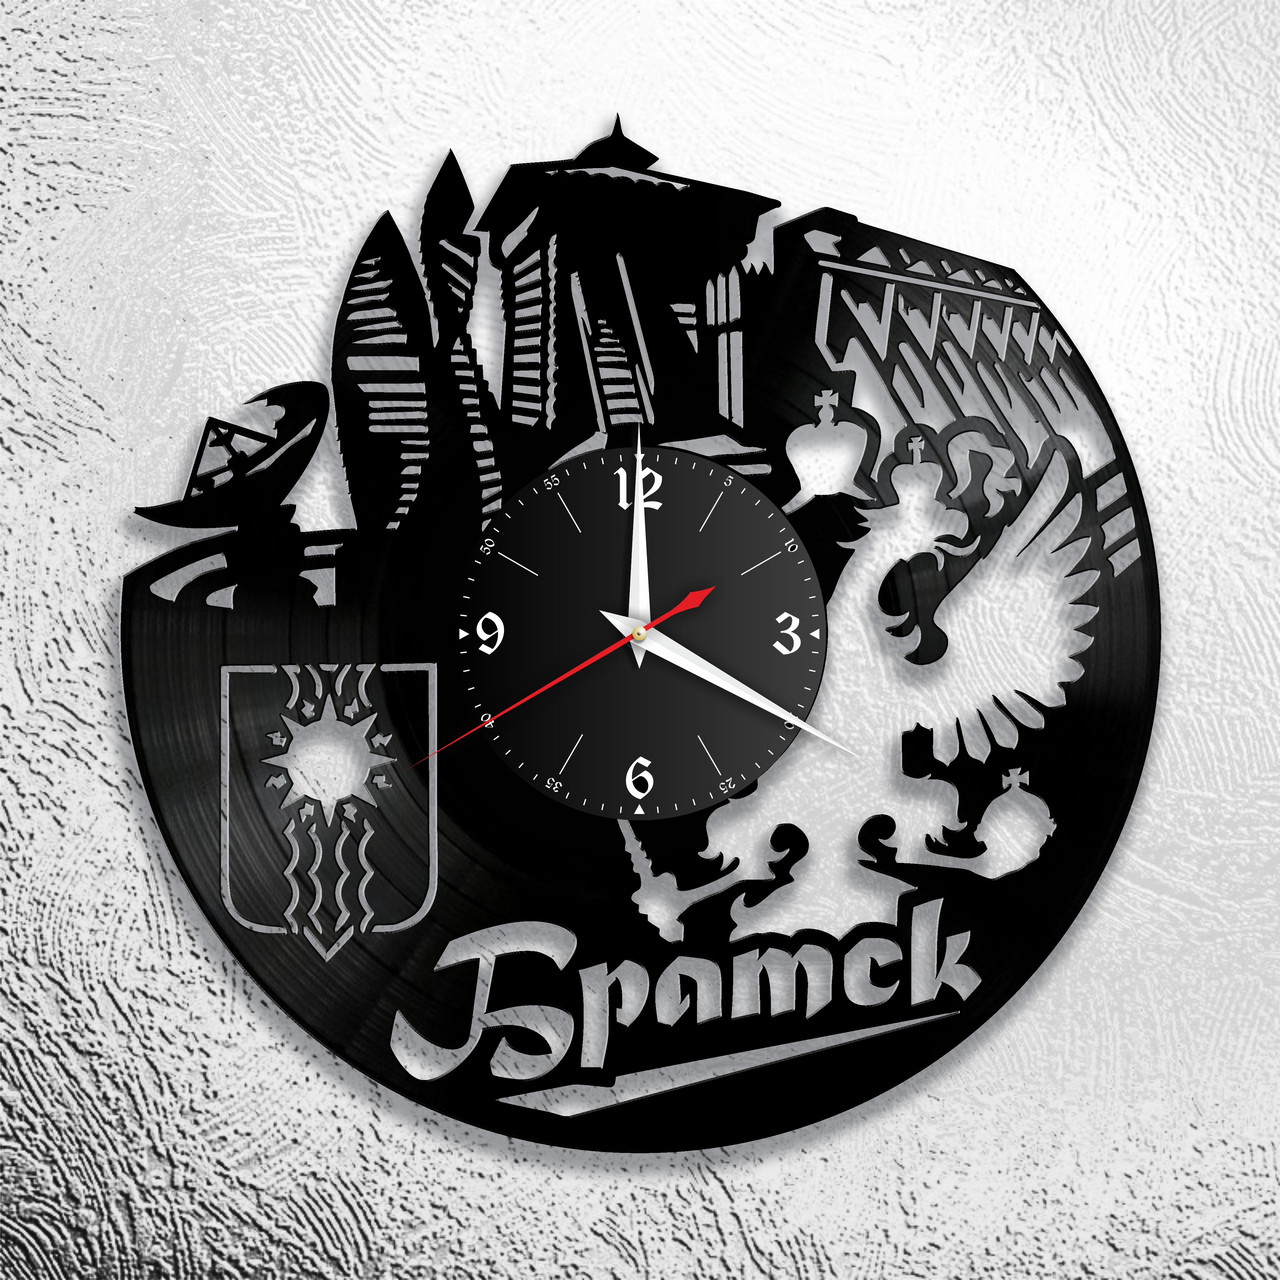 Часы из виниловой пластинки  "Братск" версия 1, фото 1